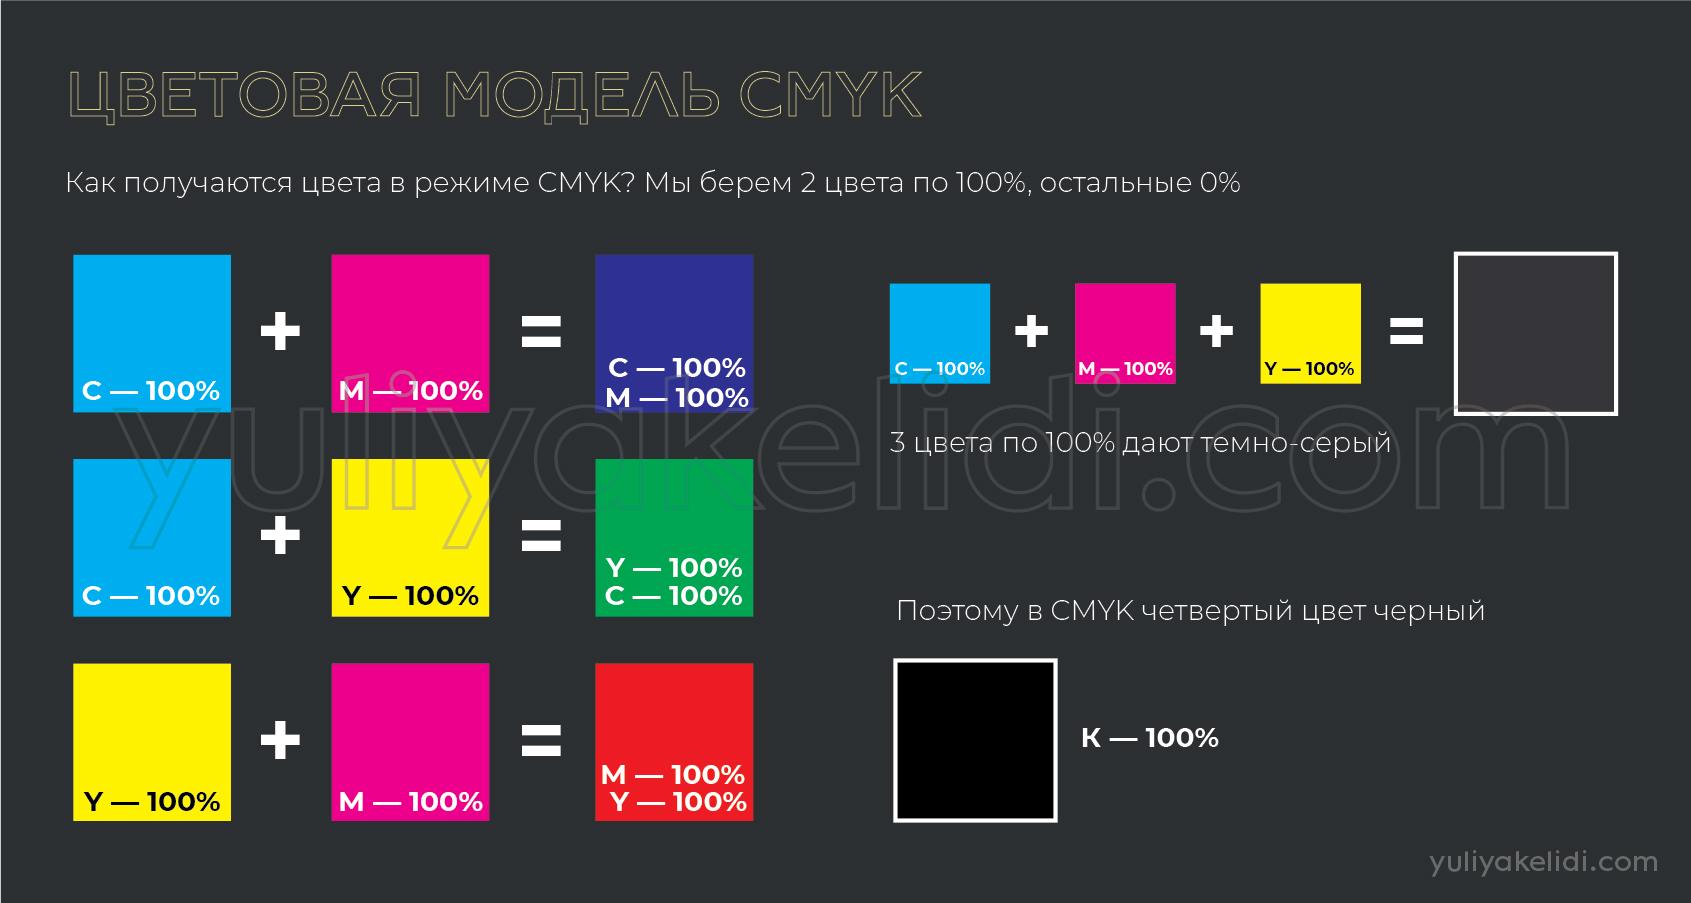 Что такое CMYK и как получить чистый цвет при печати